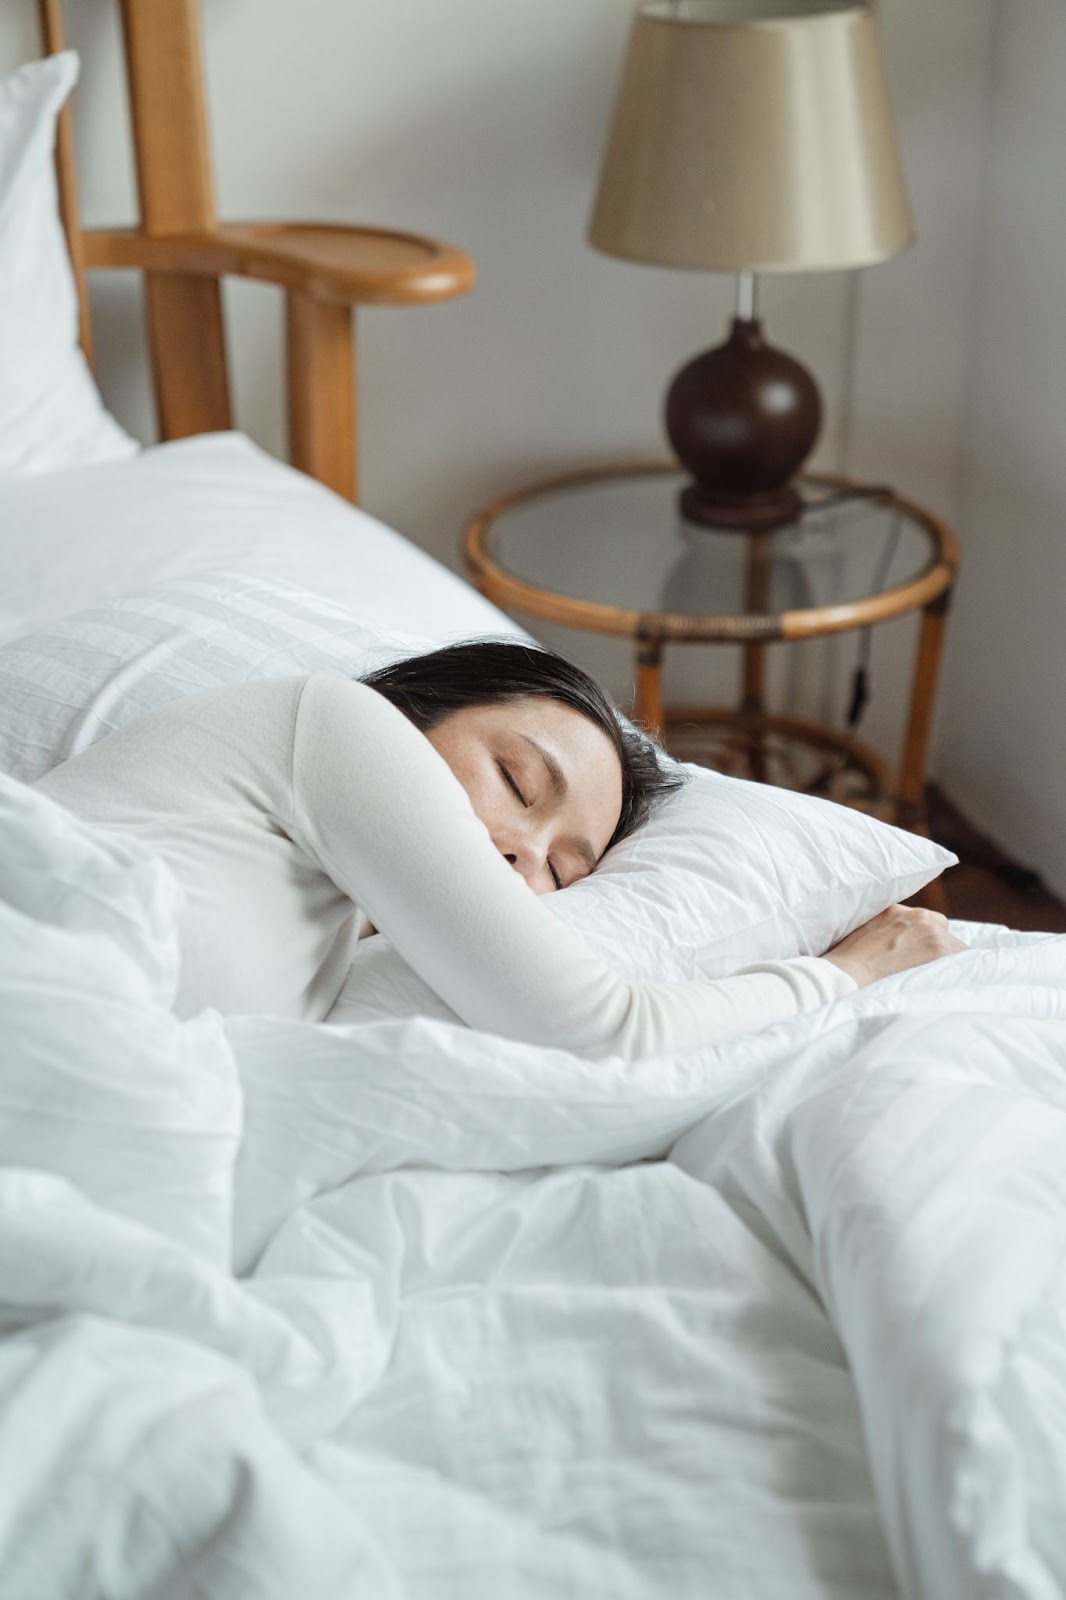 benefits of ice baths on sleep quality